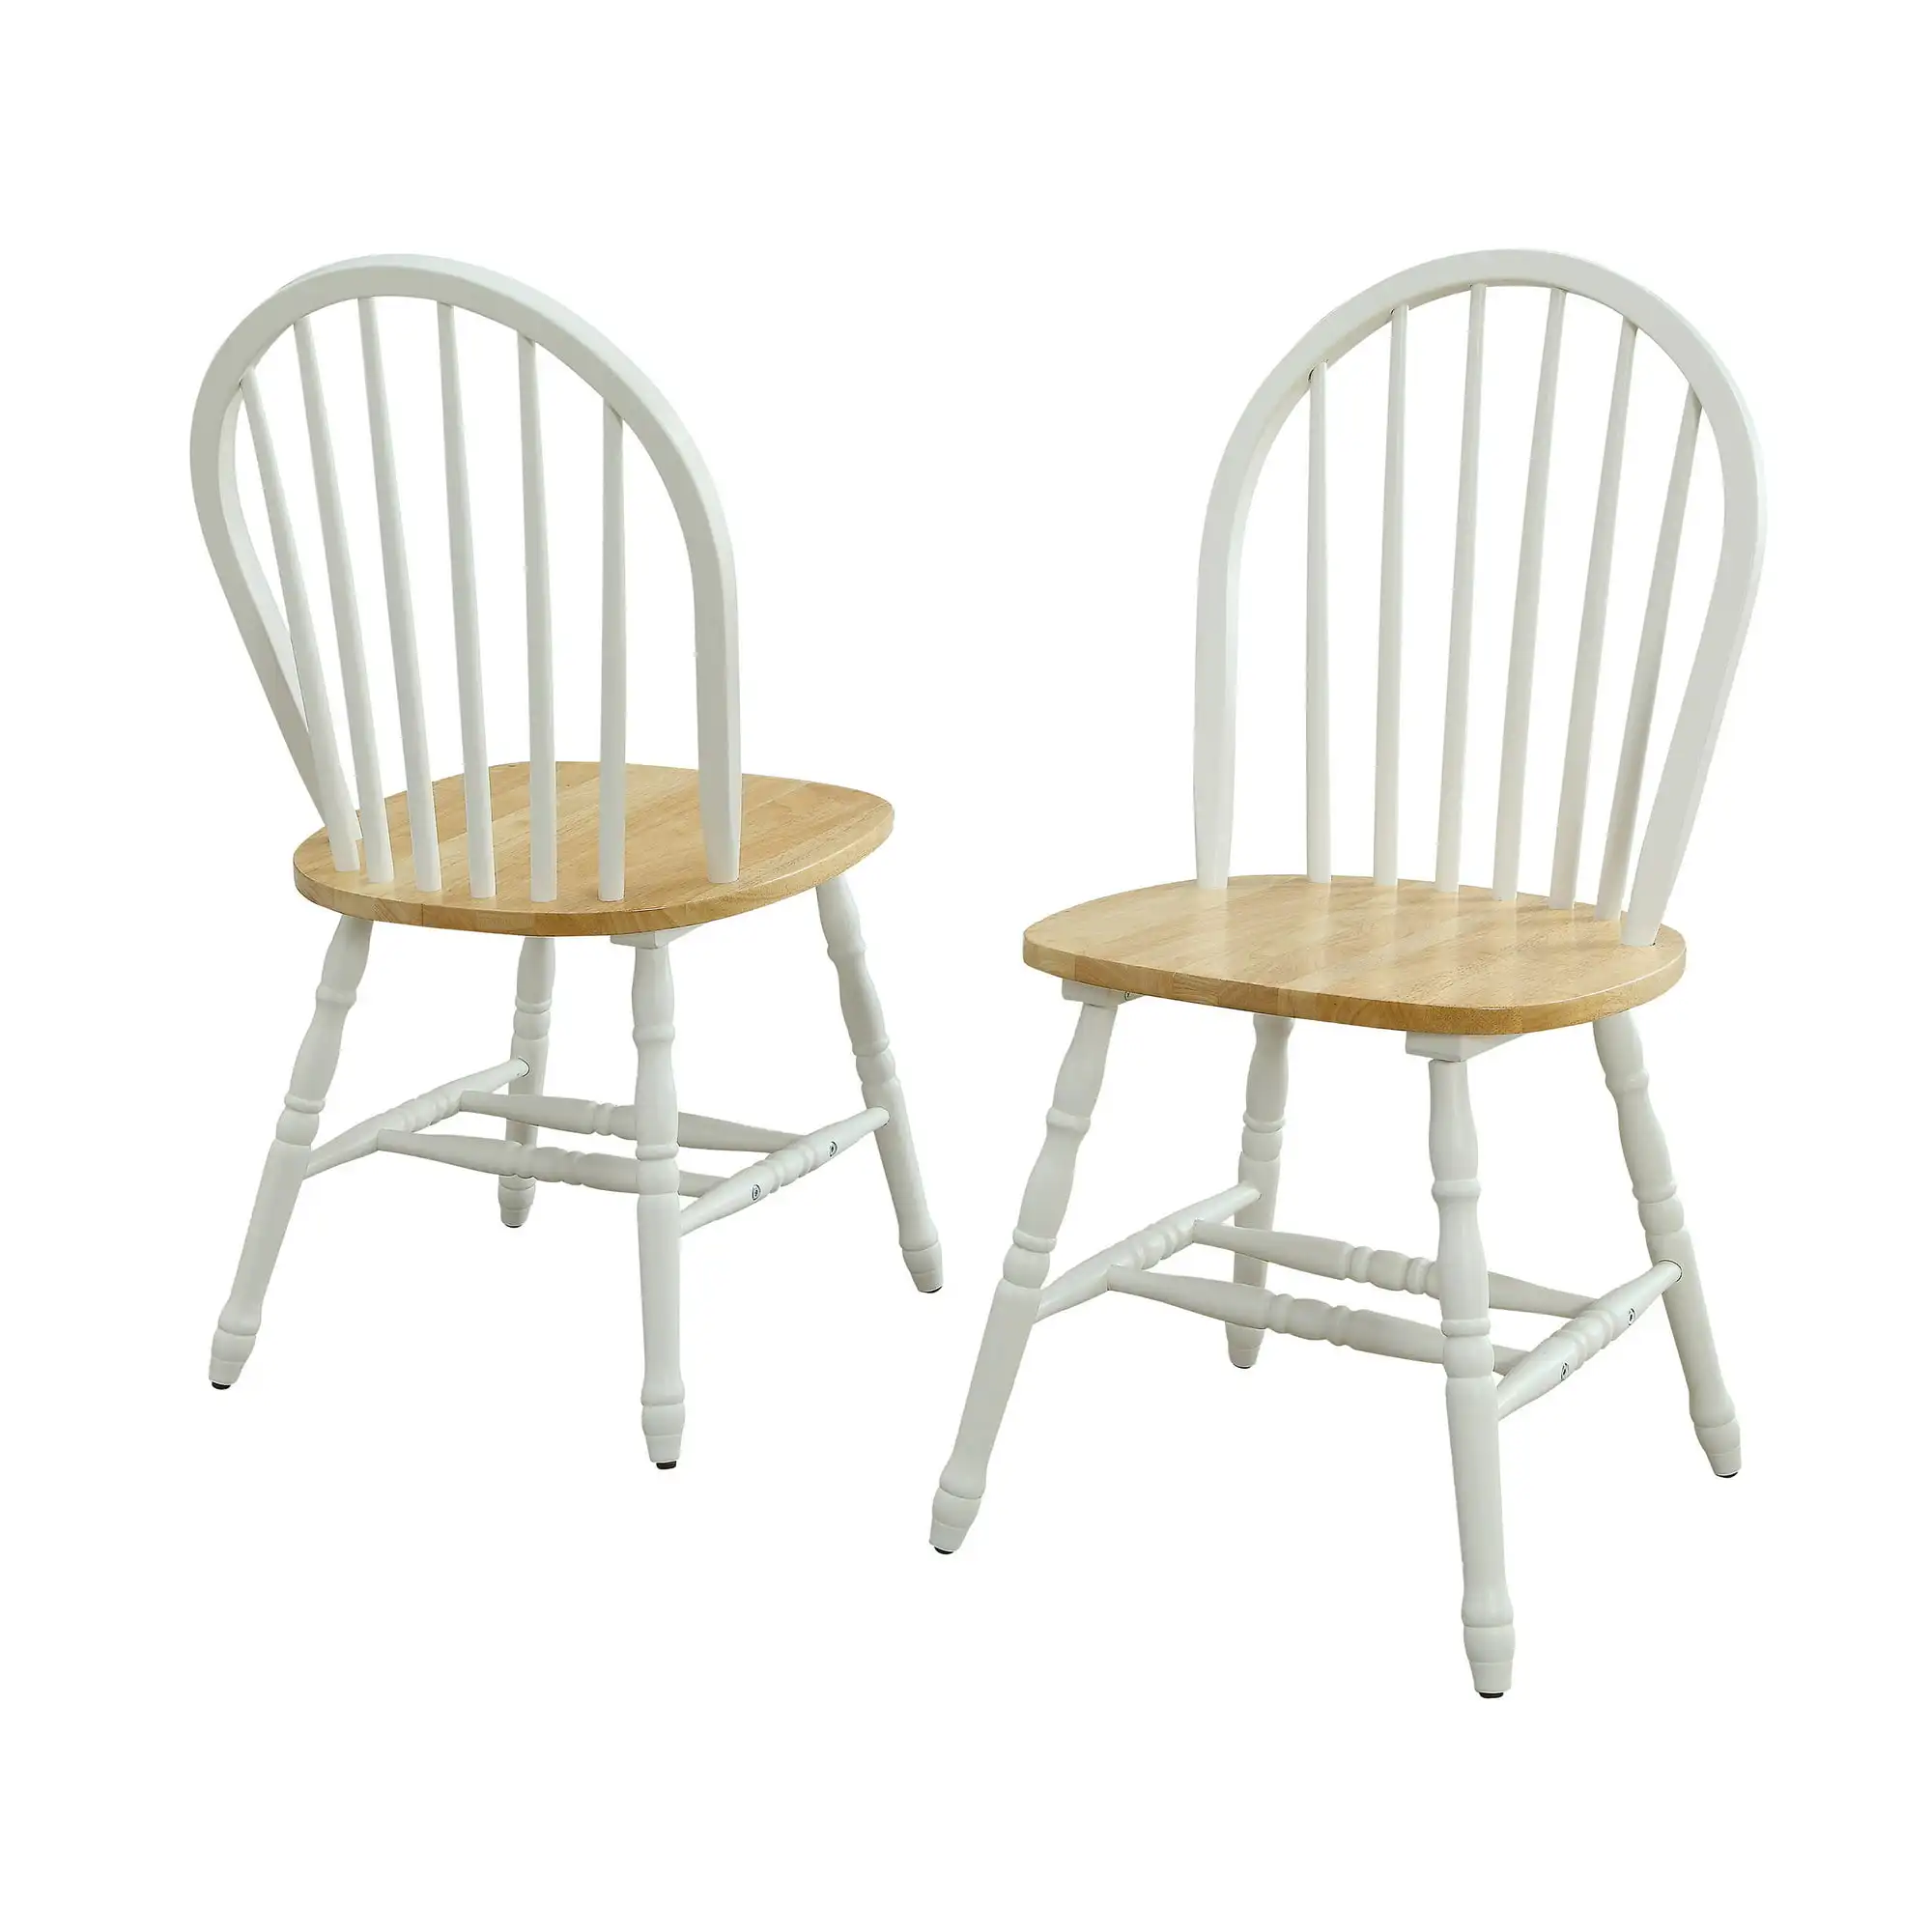 Осенние обеденные стулья из массива дерева, белого и дубового (комплект из 2 предметов), в наличии 4 варианта отделки. . ' - ' . 3